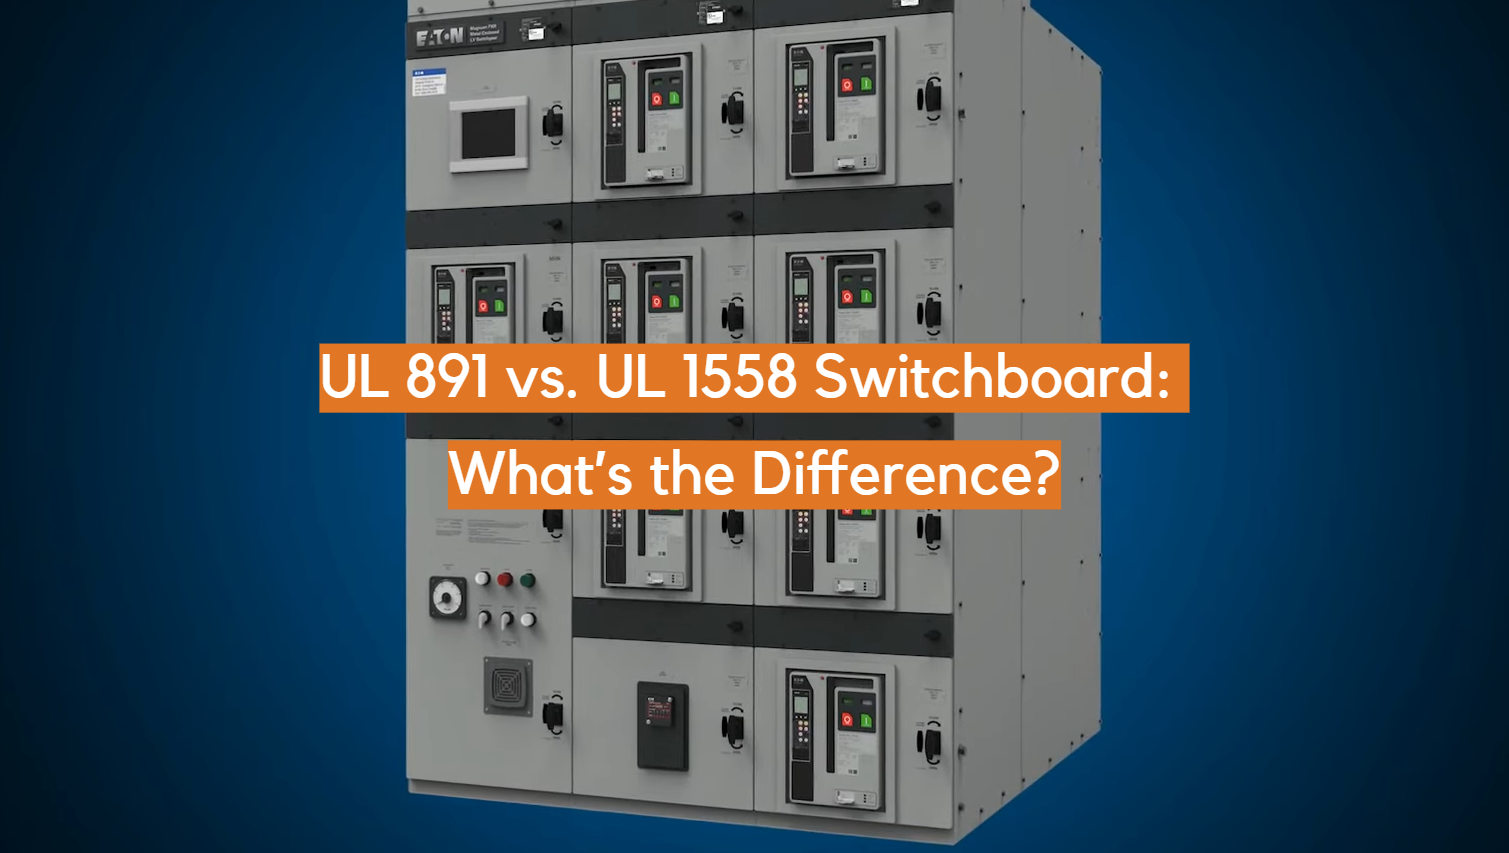 Tablero de distribución UL 891 frente a UL 1558: ¿Cuál es la diferencia?